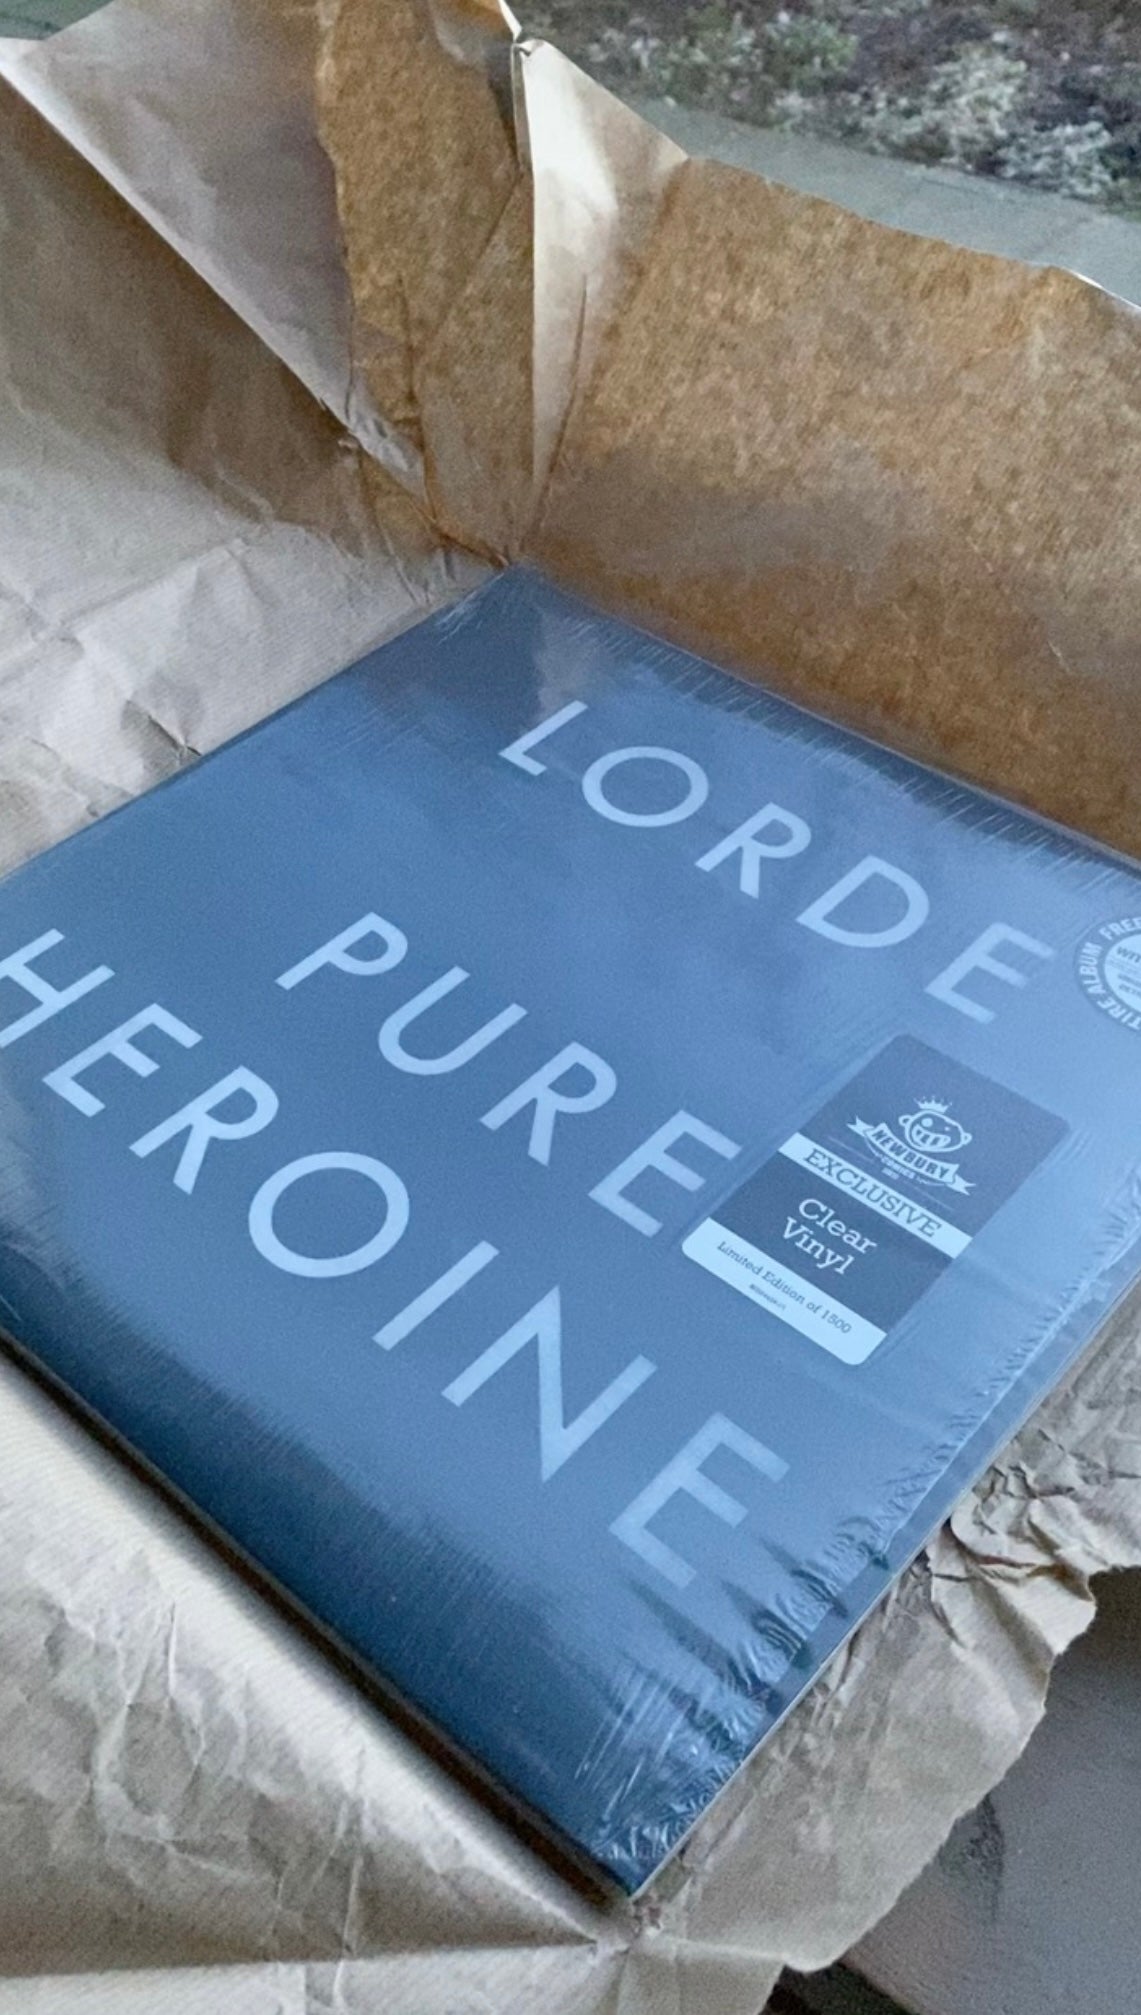 Lorde - Pure Heroine clear vinyl